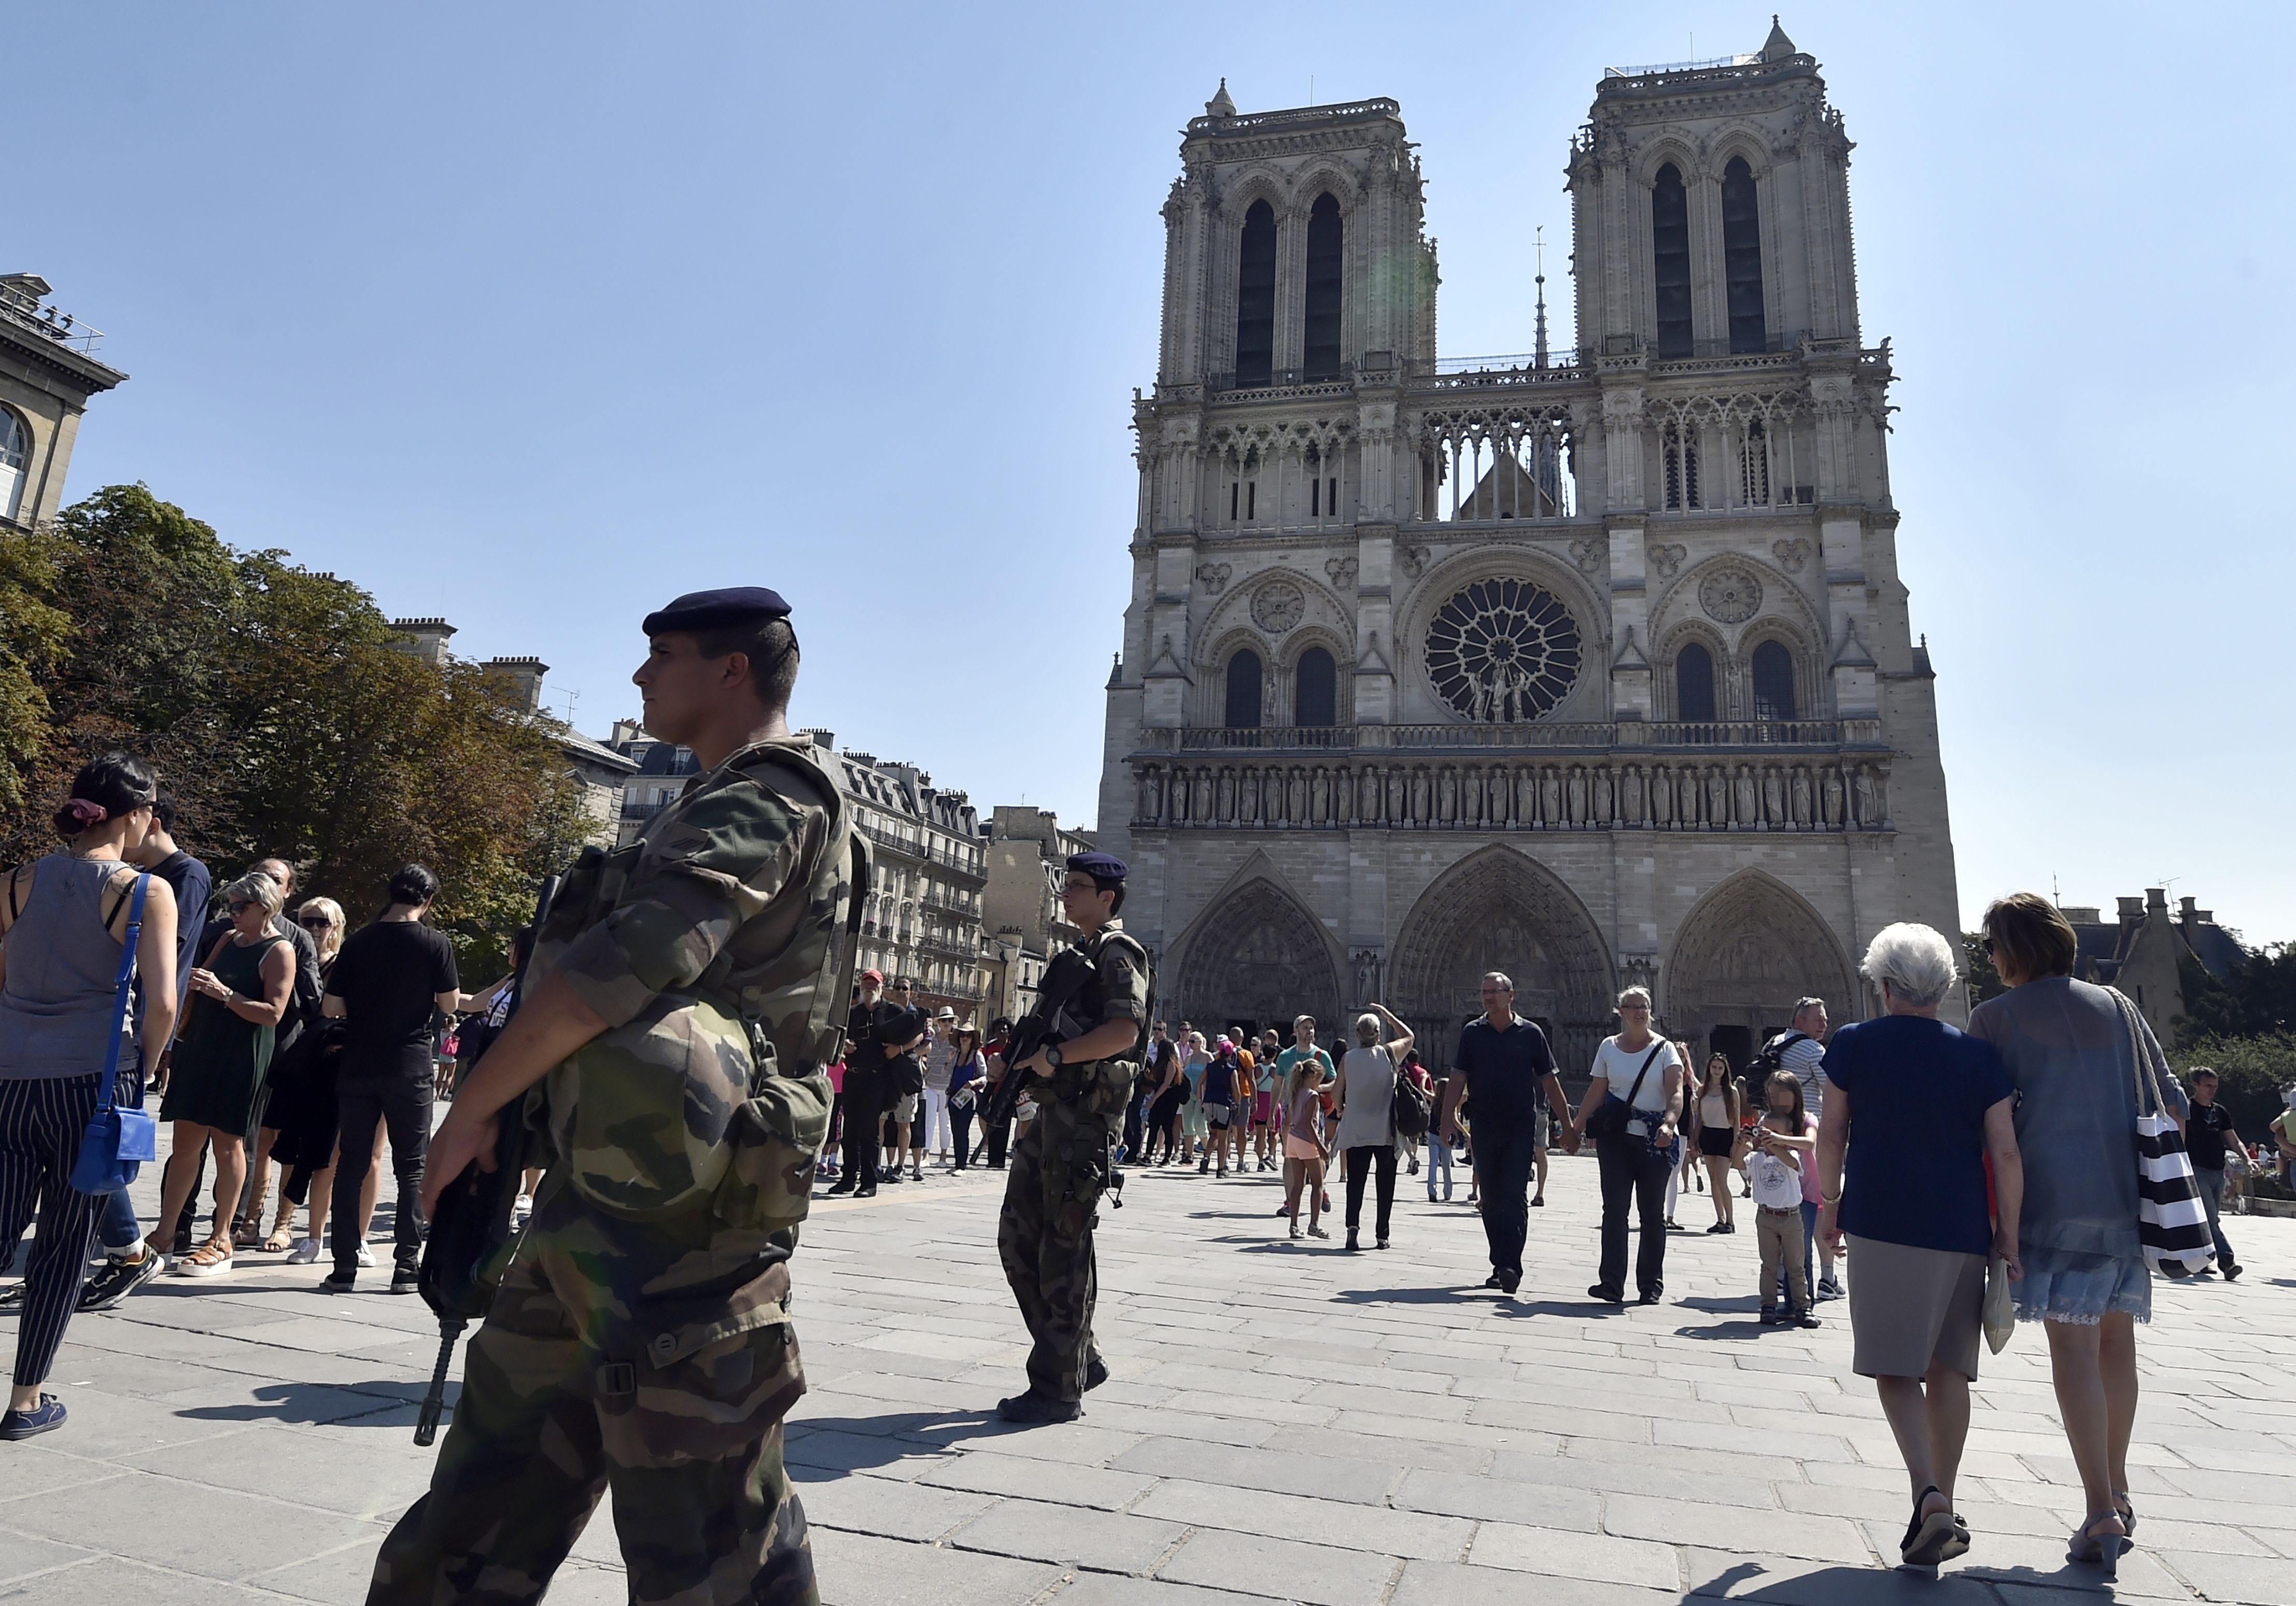 Meglőtték a férfit, aki kalapáccsal támadt rendőrökre a Notre-Dame közelében